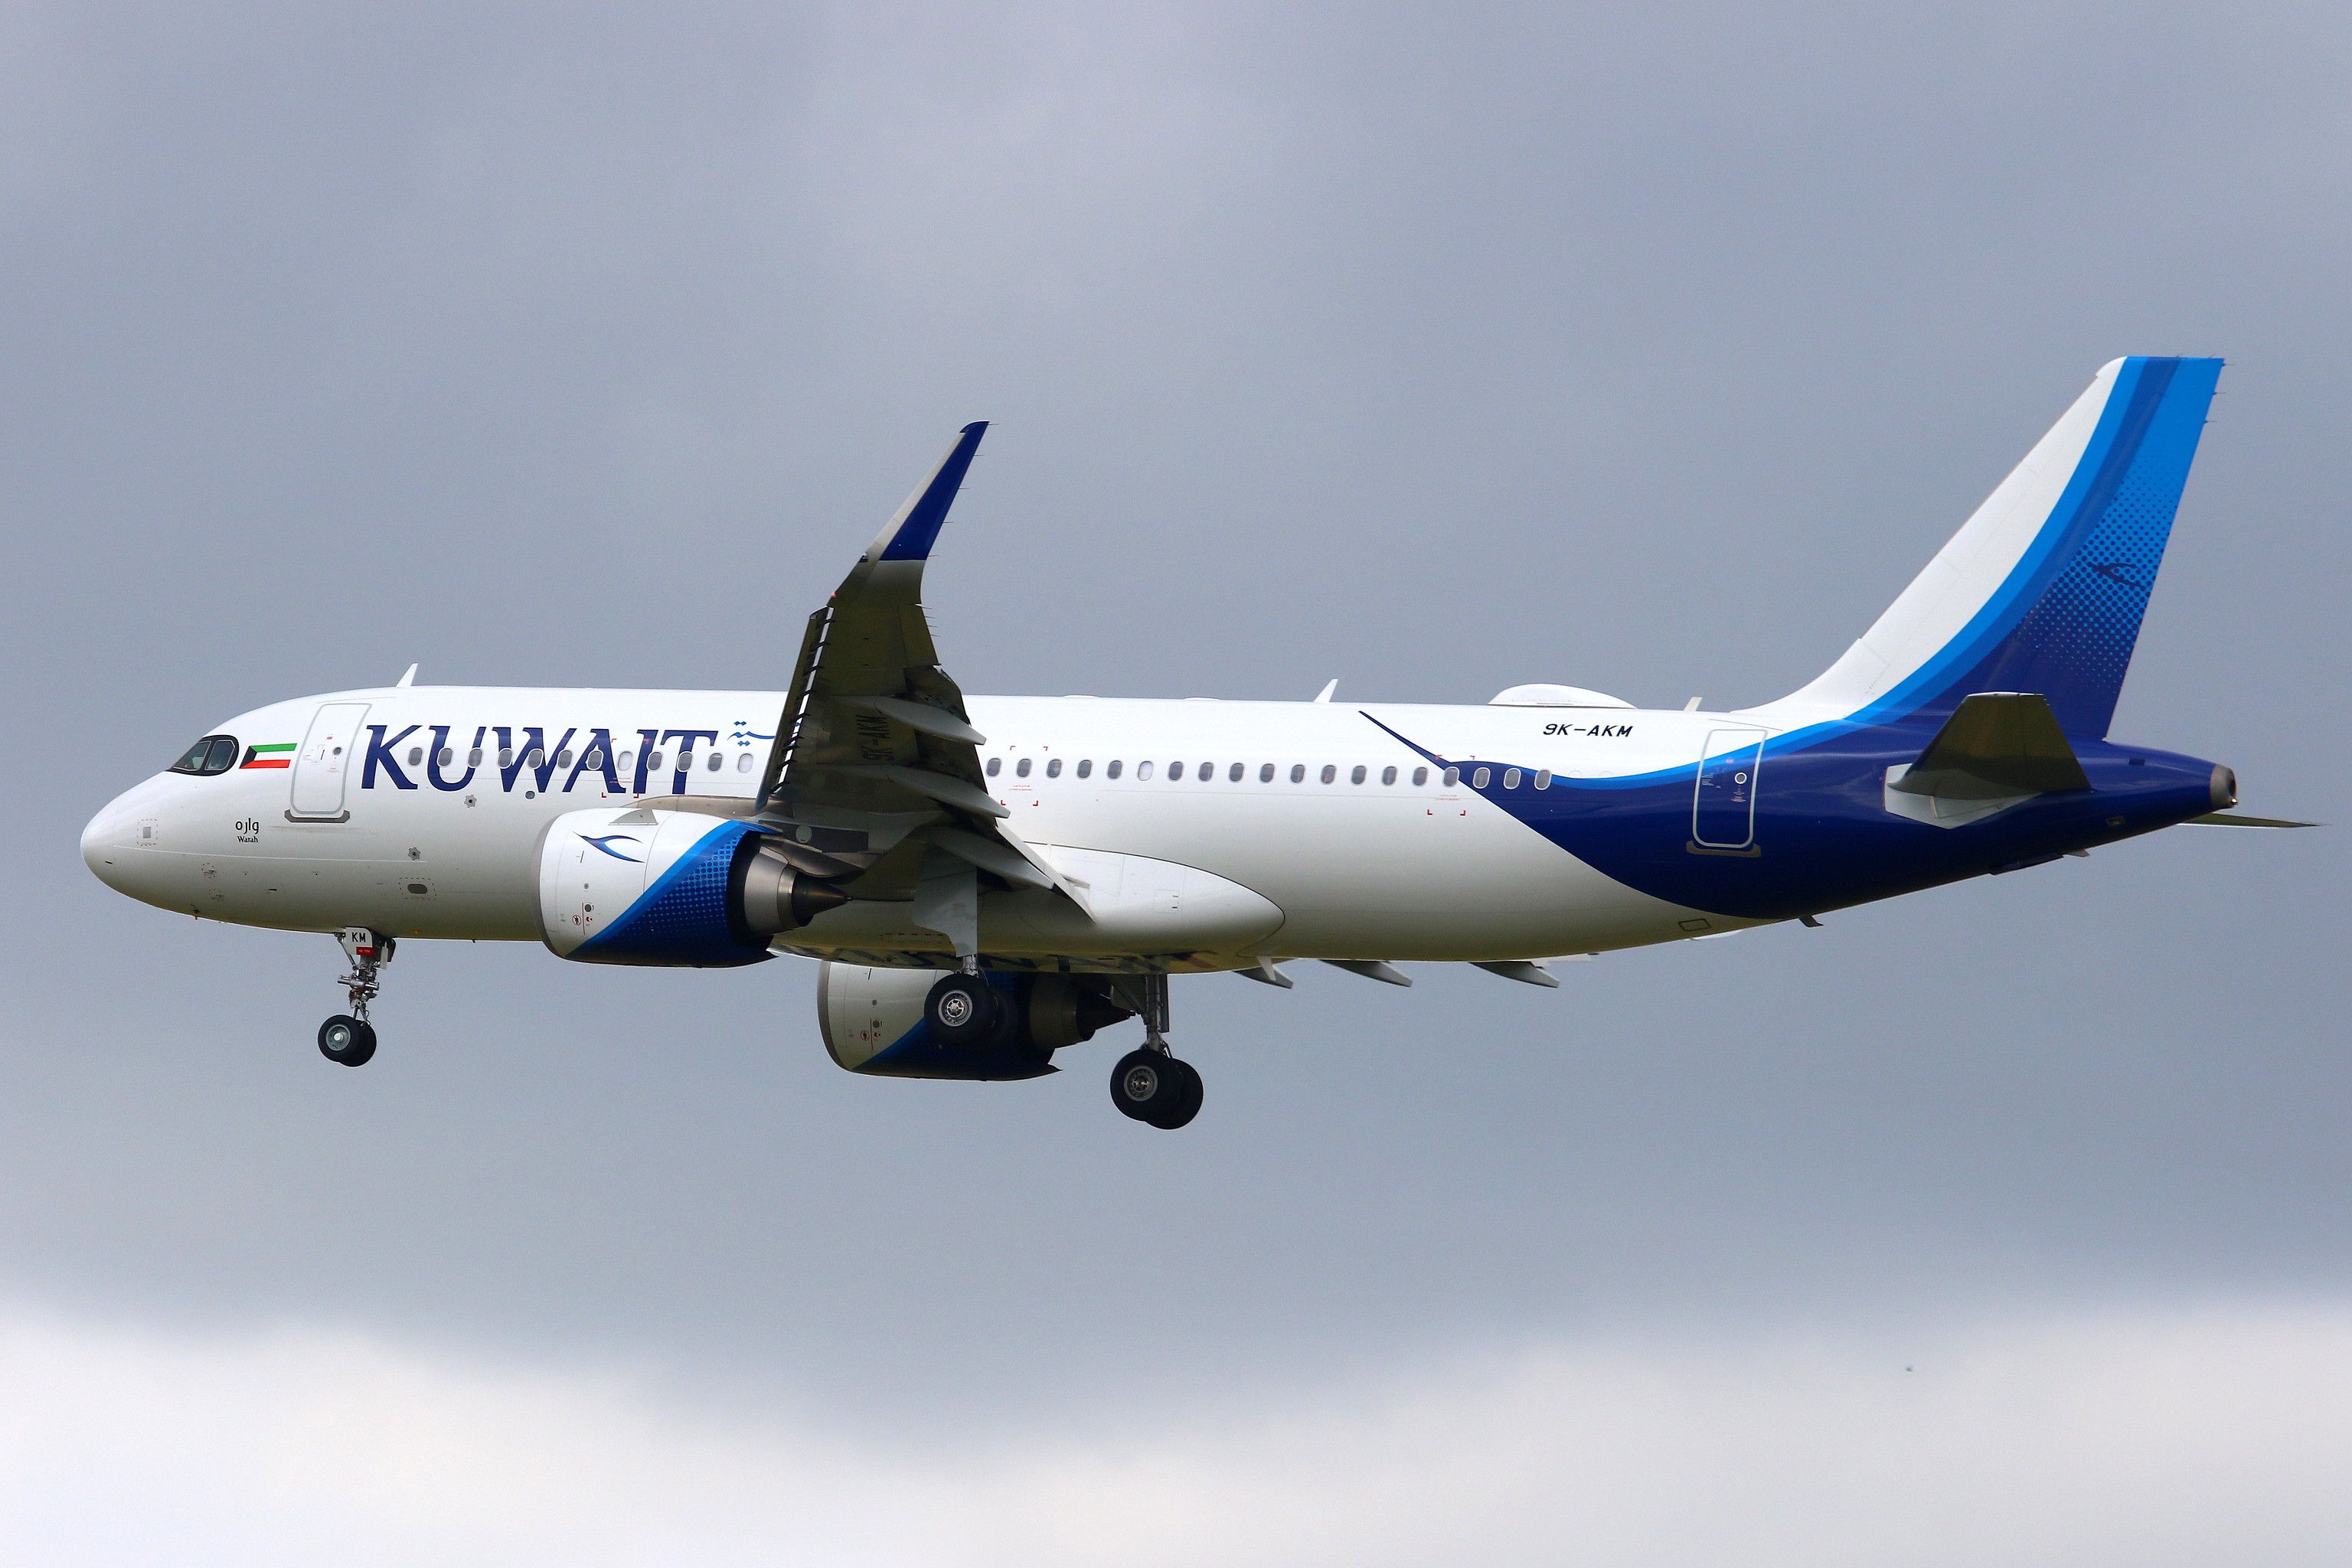 Kuwait Airways A320neo